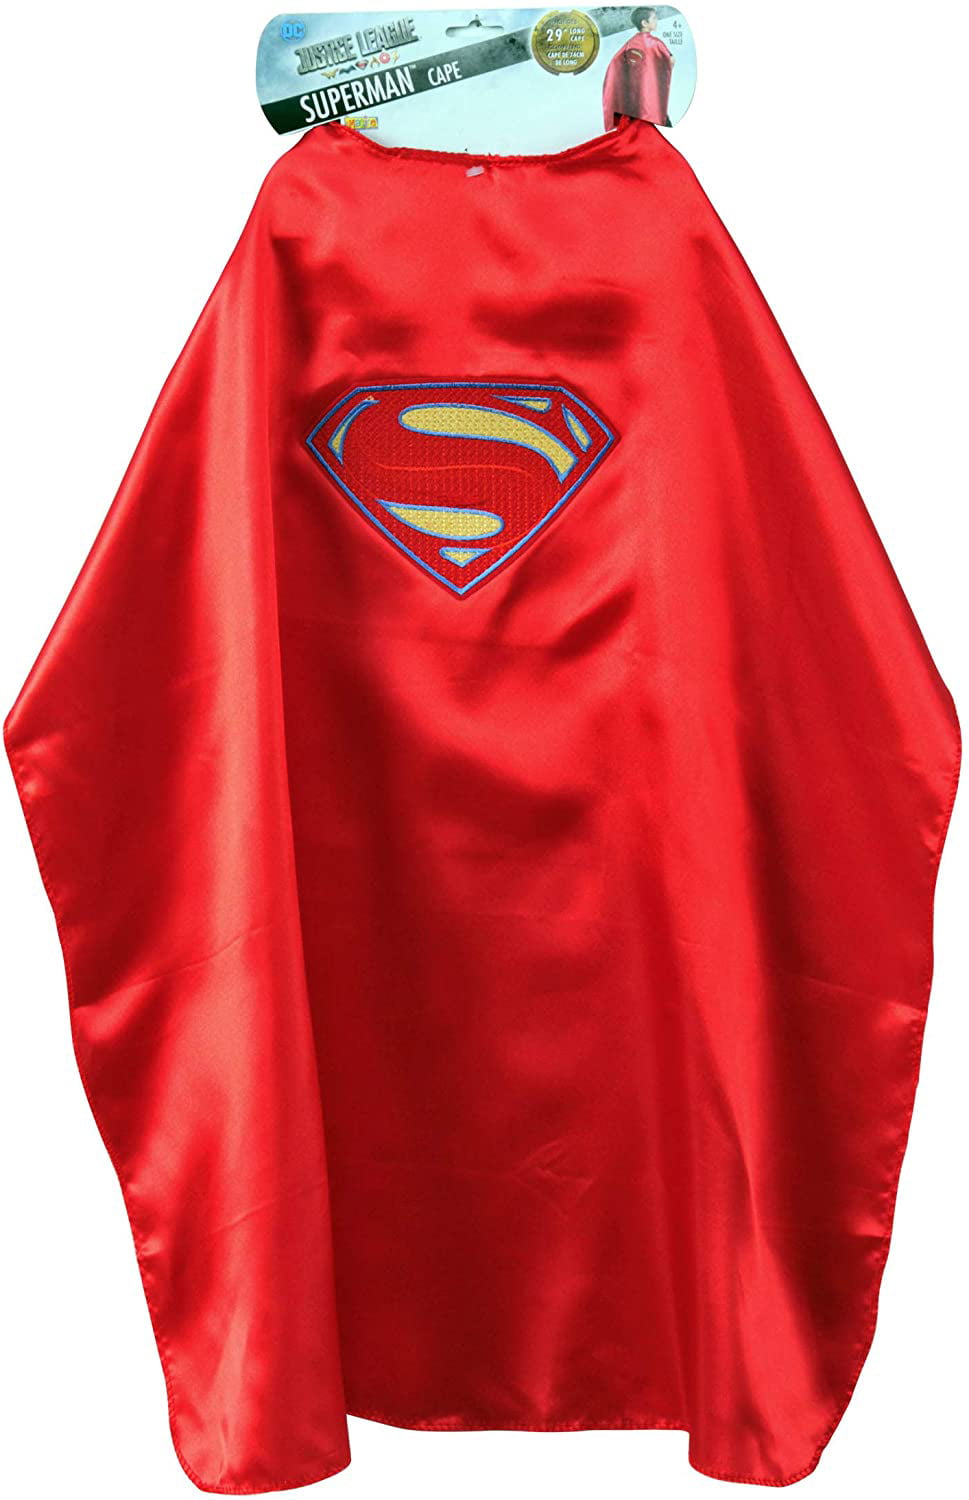 herfst Arne raken Adult Deluxe Superman Cape Costume - Walmart.com